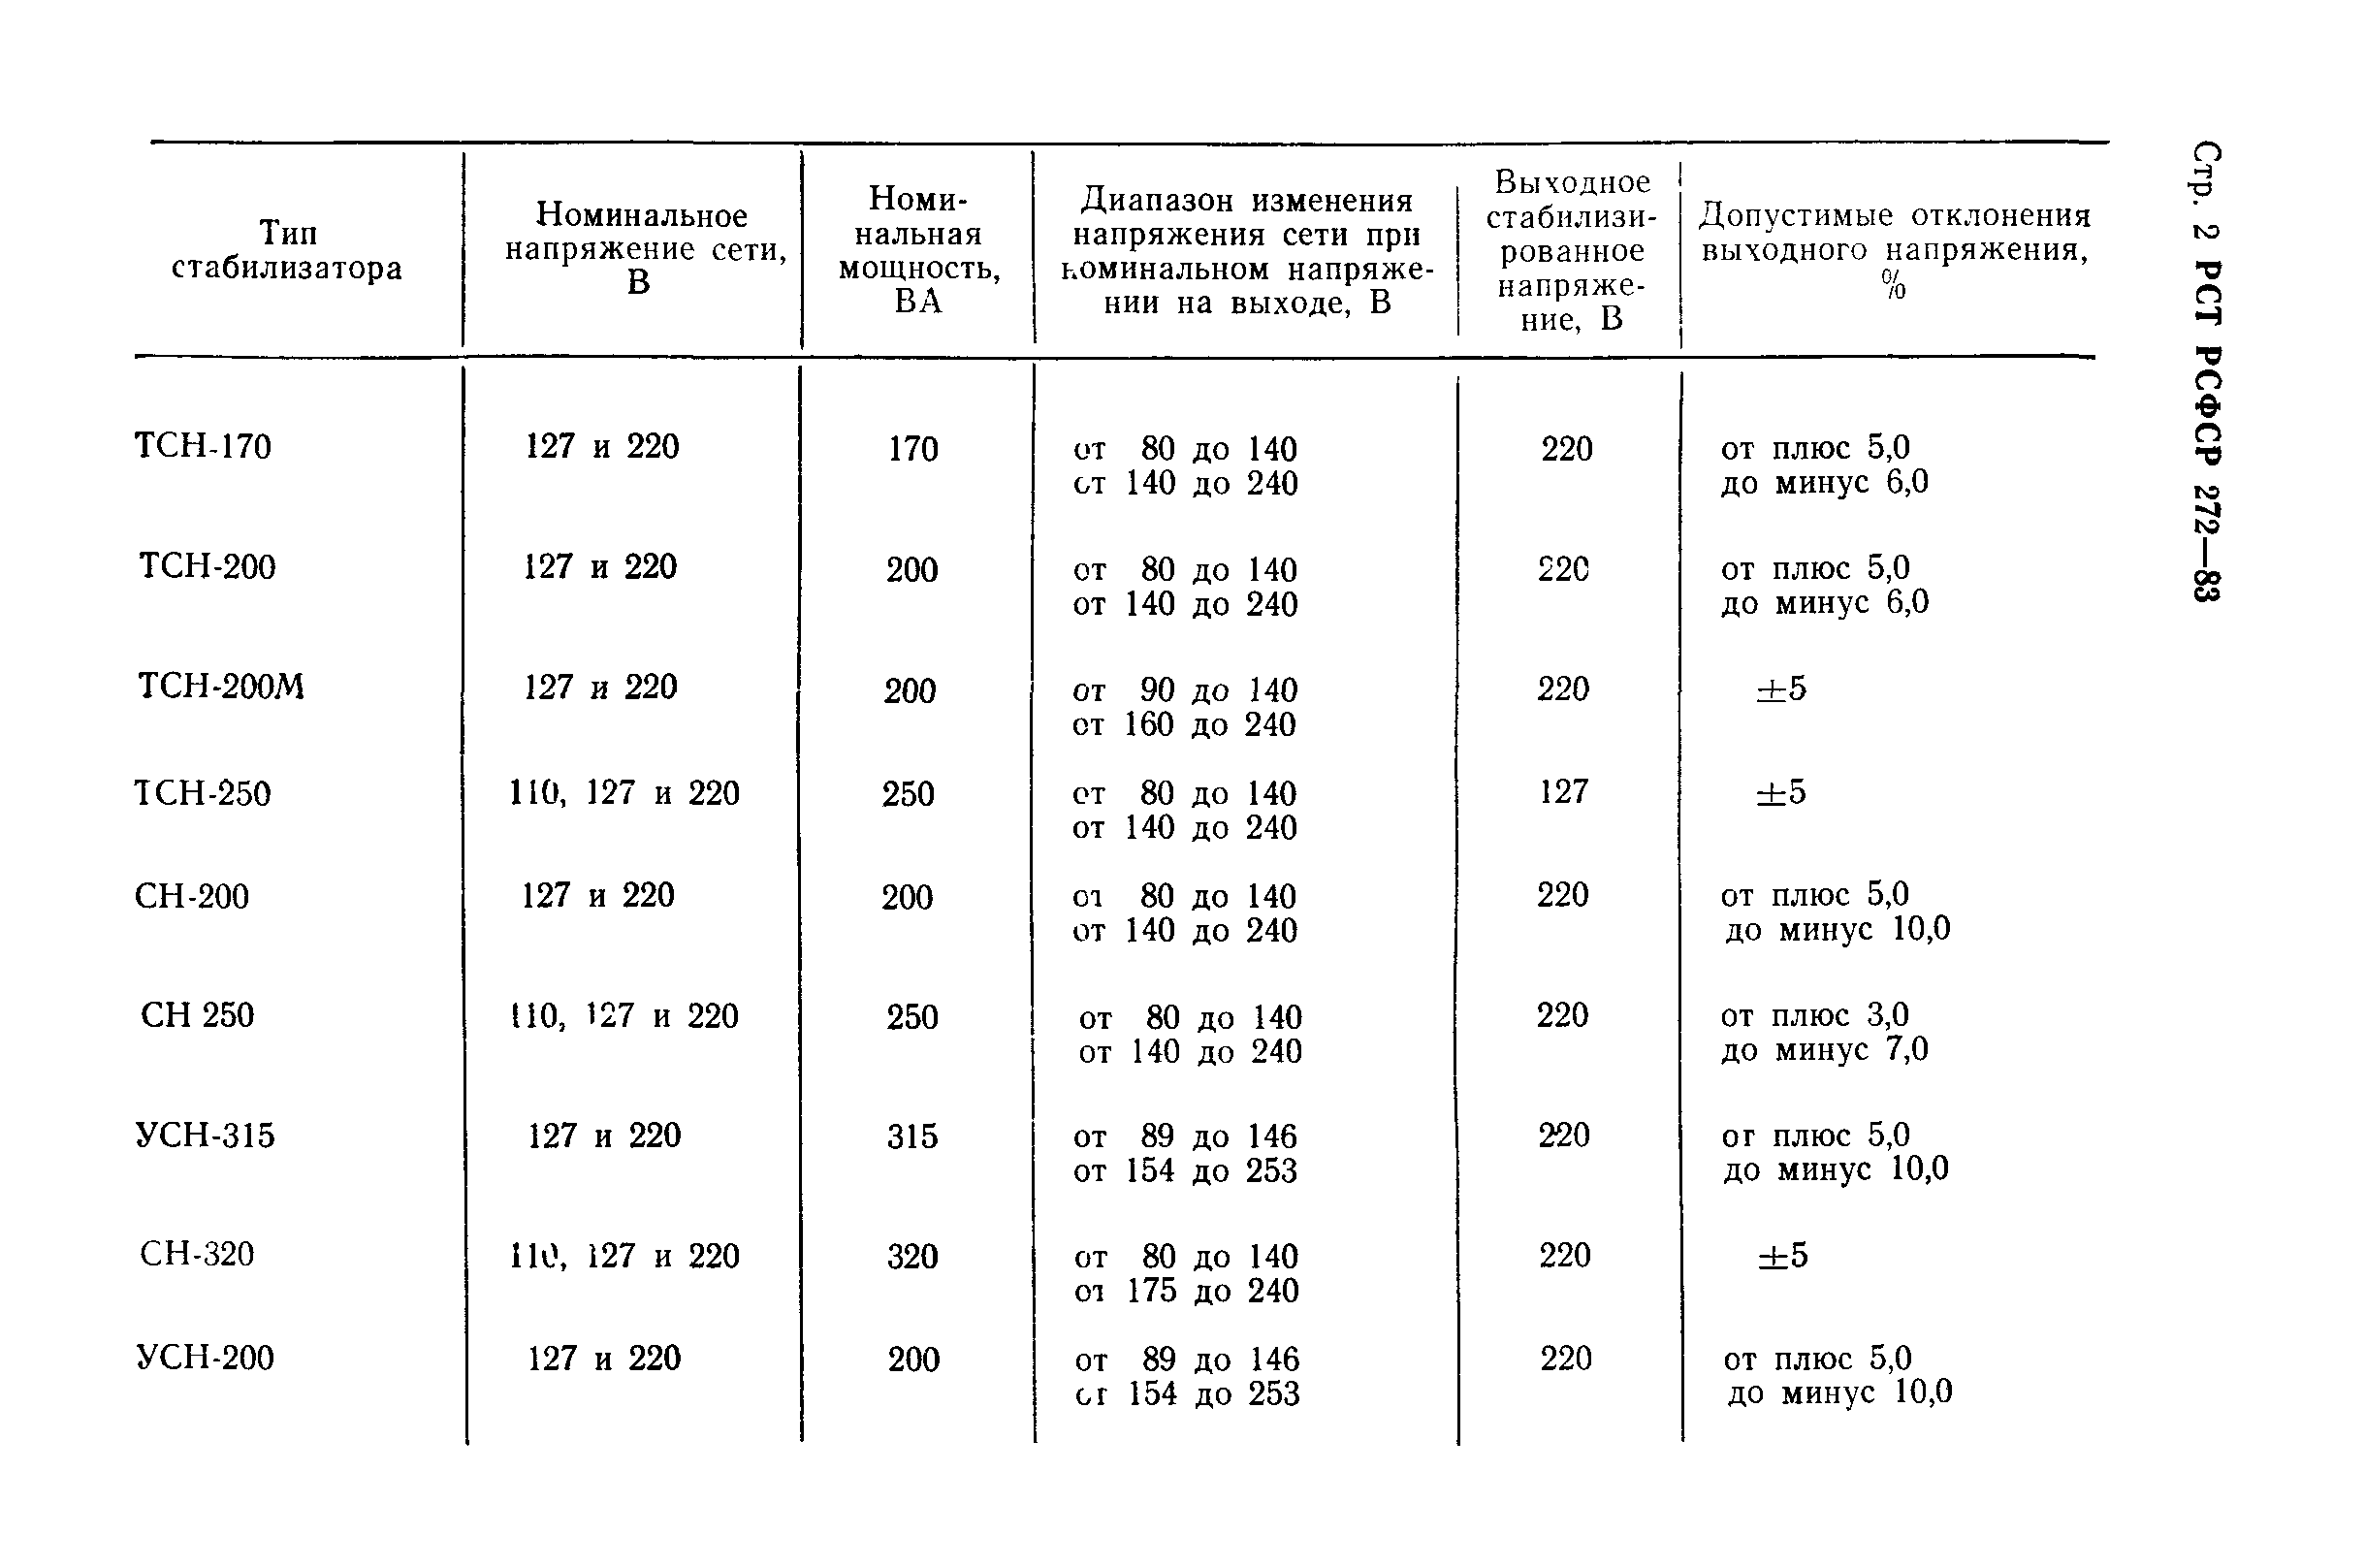 РСТ РСФСР 272-83